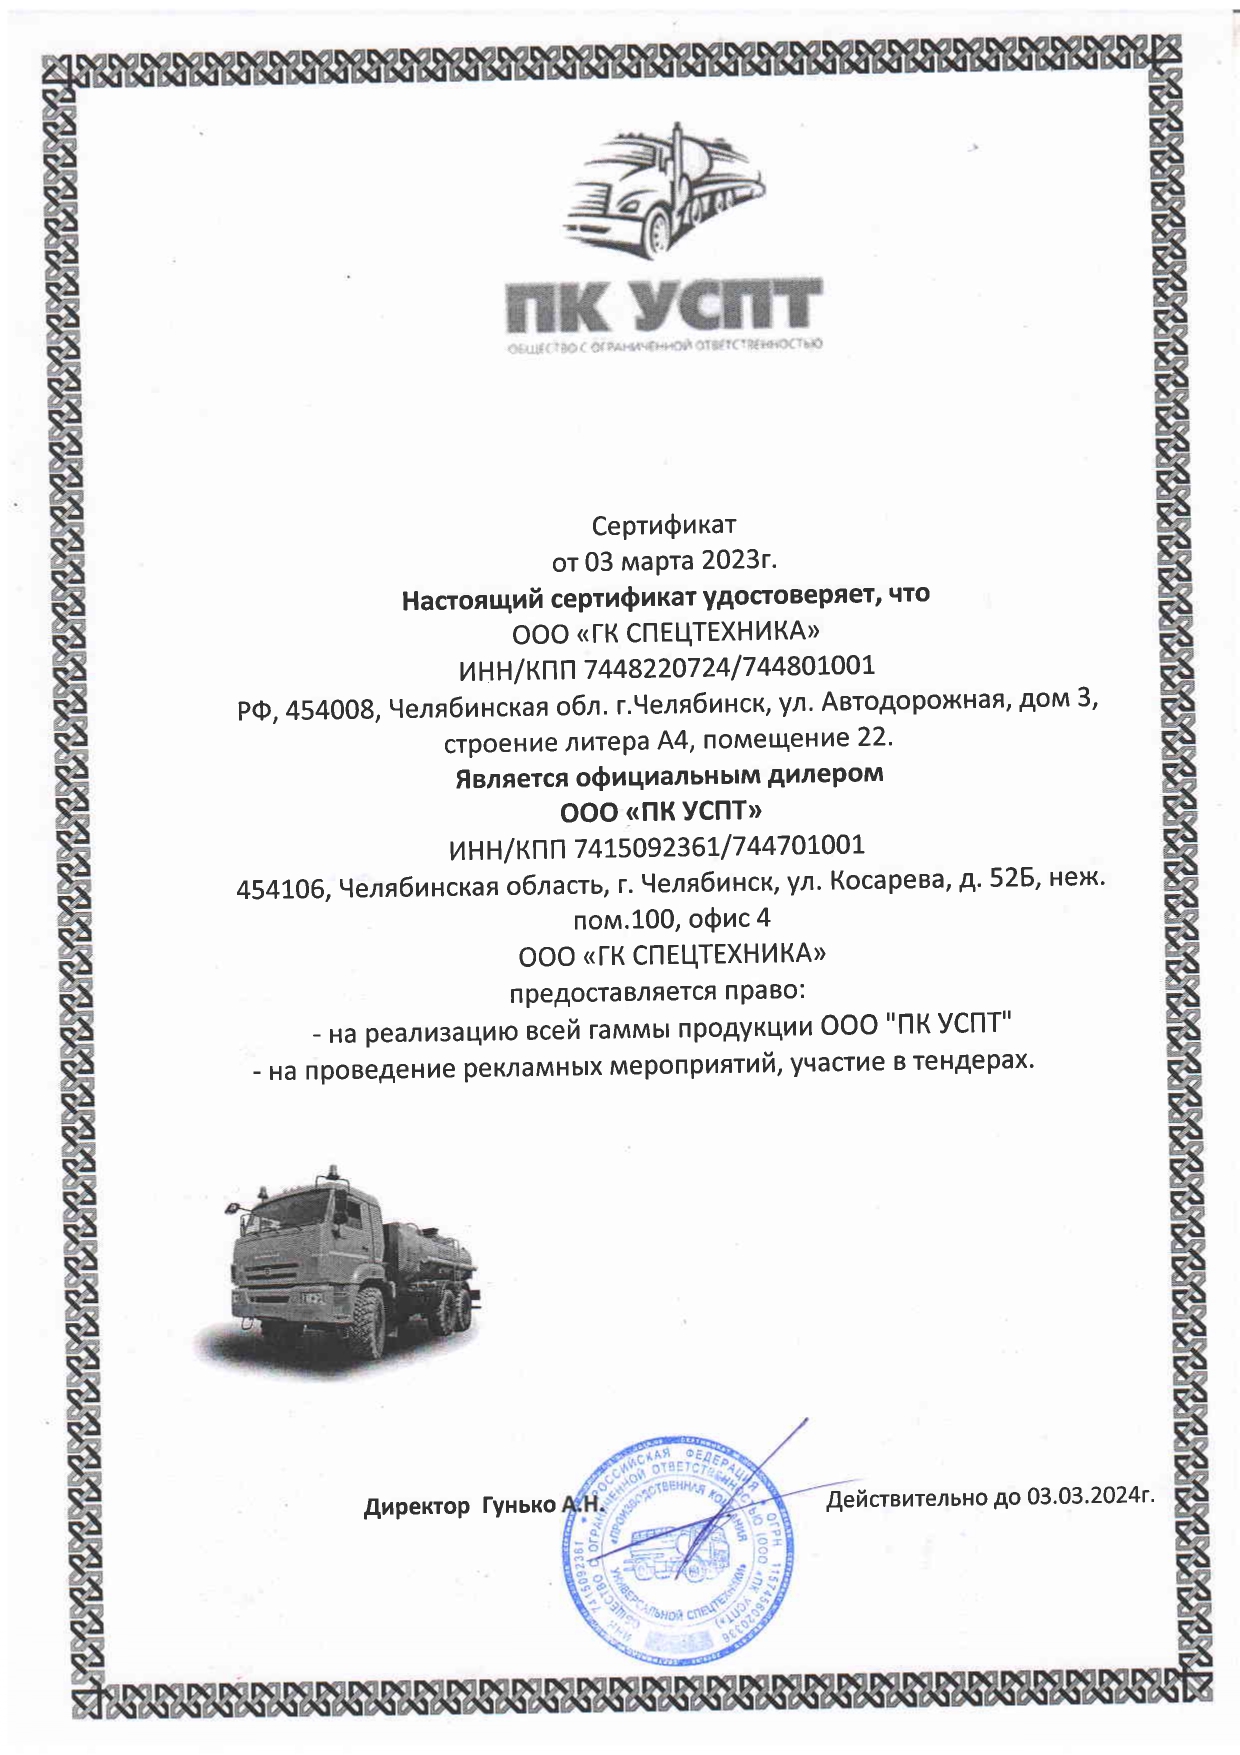 Сертификат дилера ООО «ПК УСПТ»